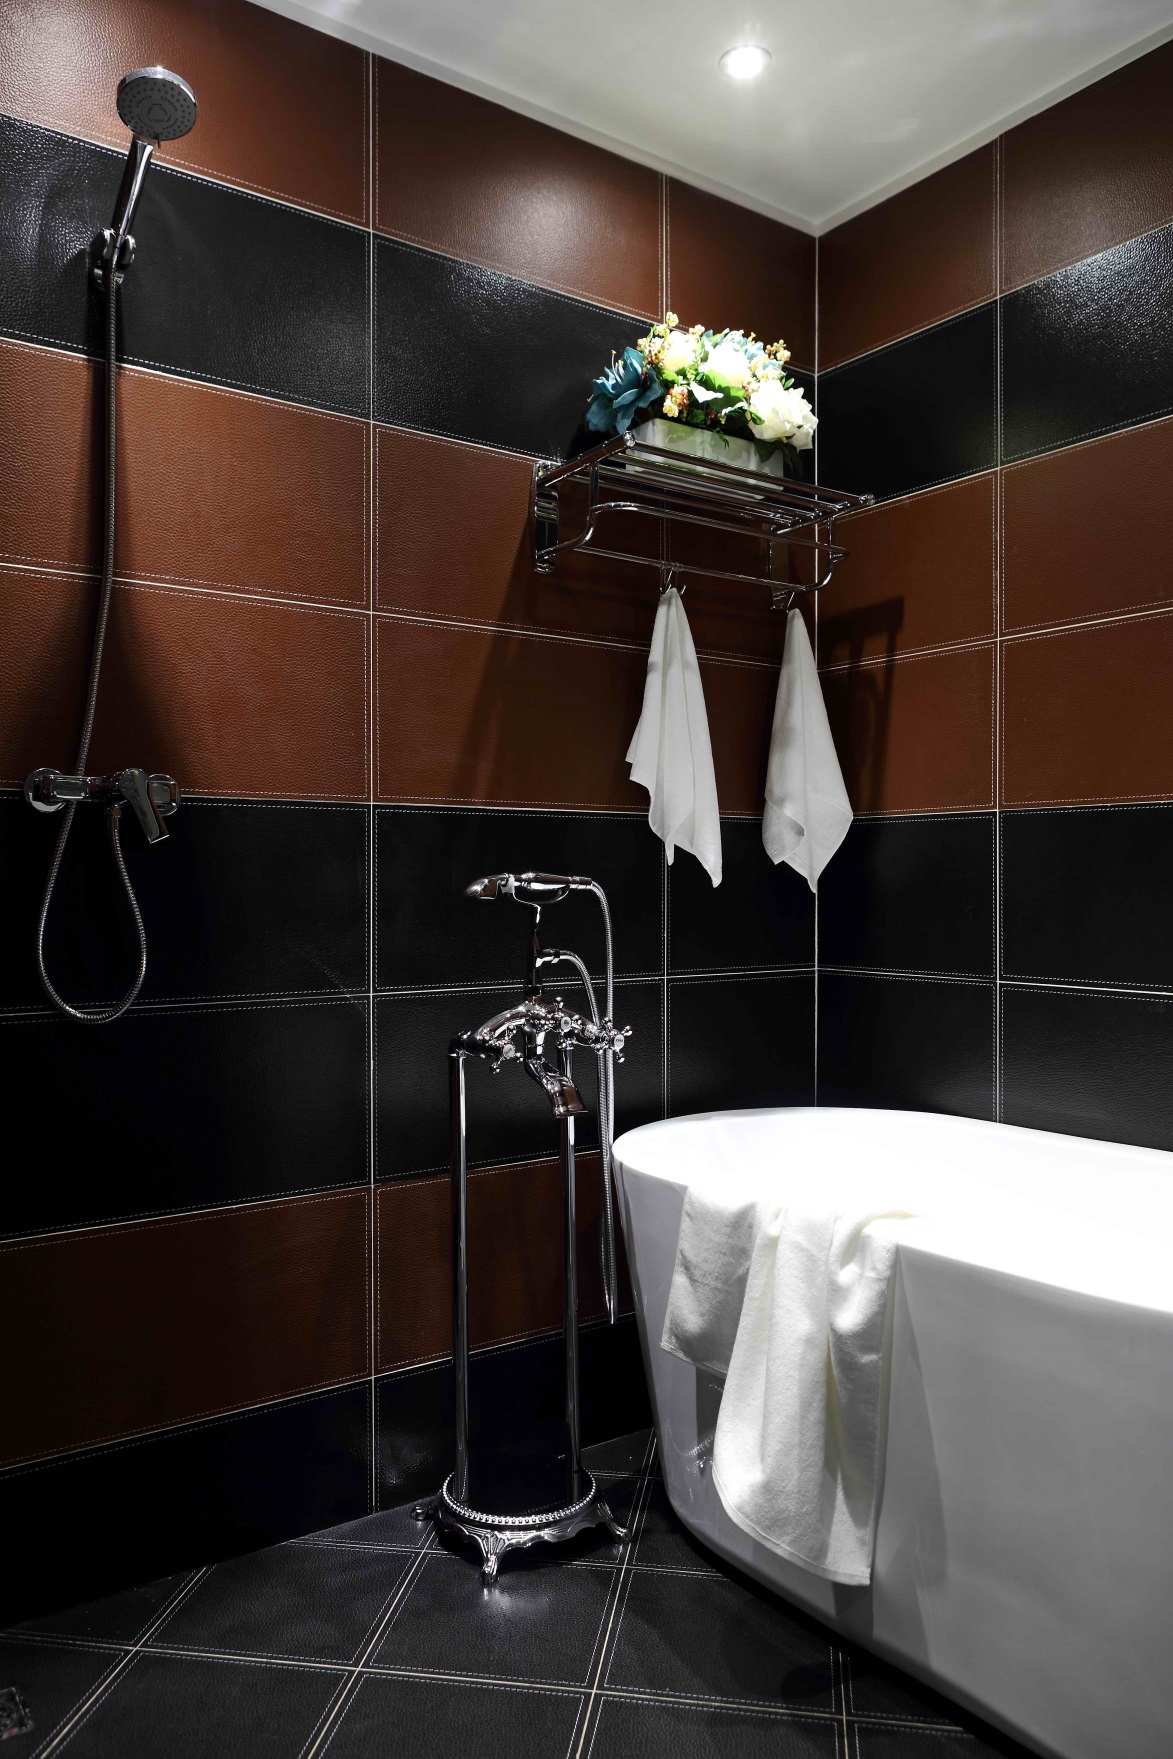 在砖红色与黑色搭配下，空间沉稳雅致，室内兼具浴缸与淋浴，体现主人对生活的追求。